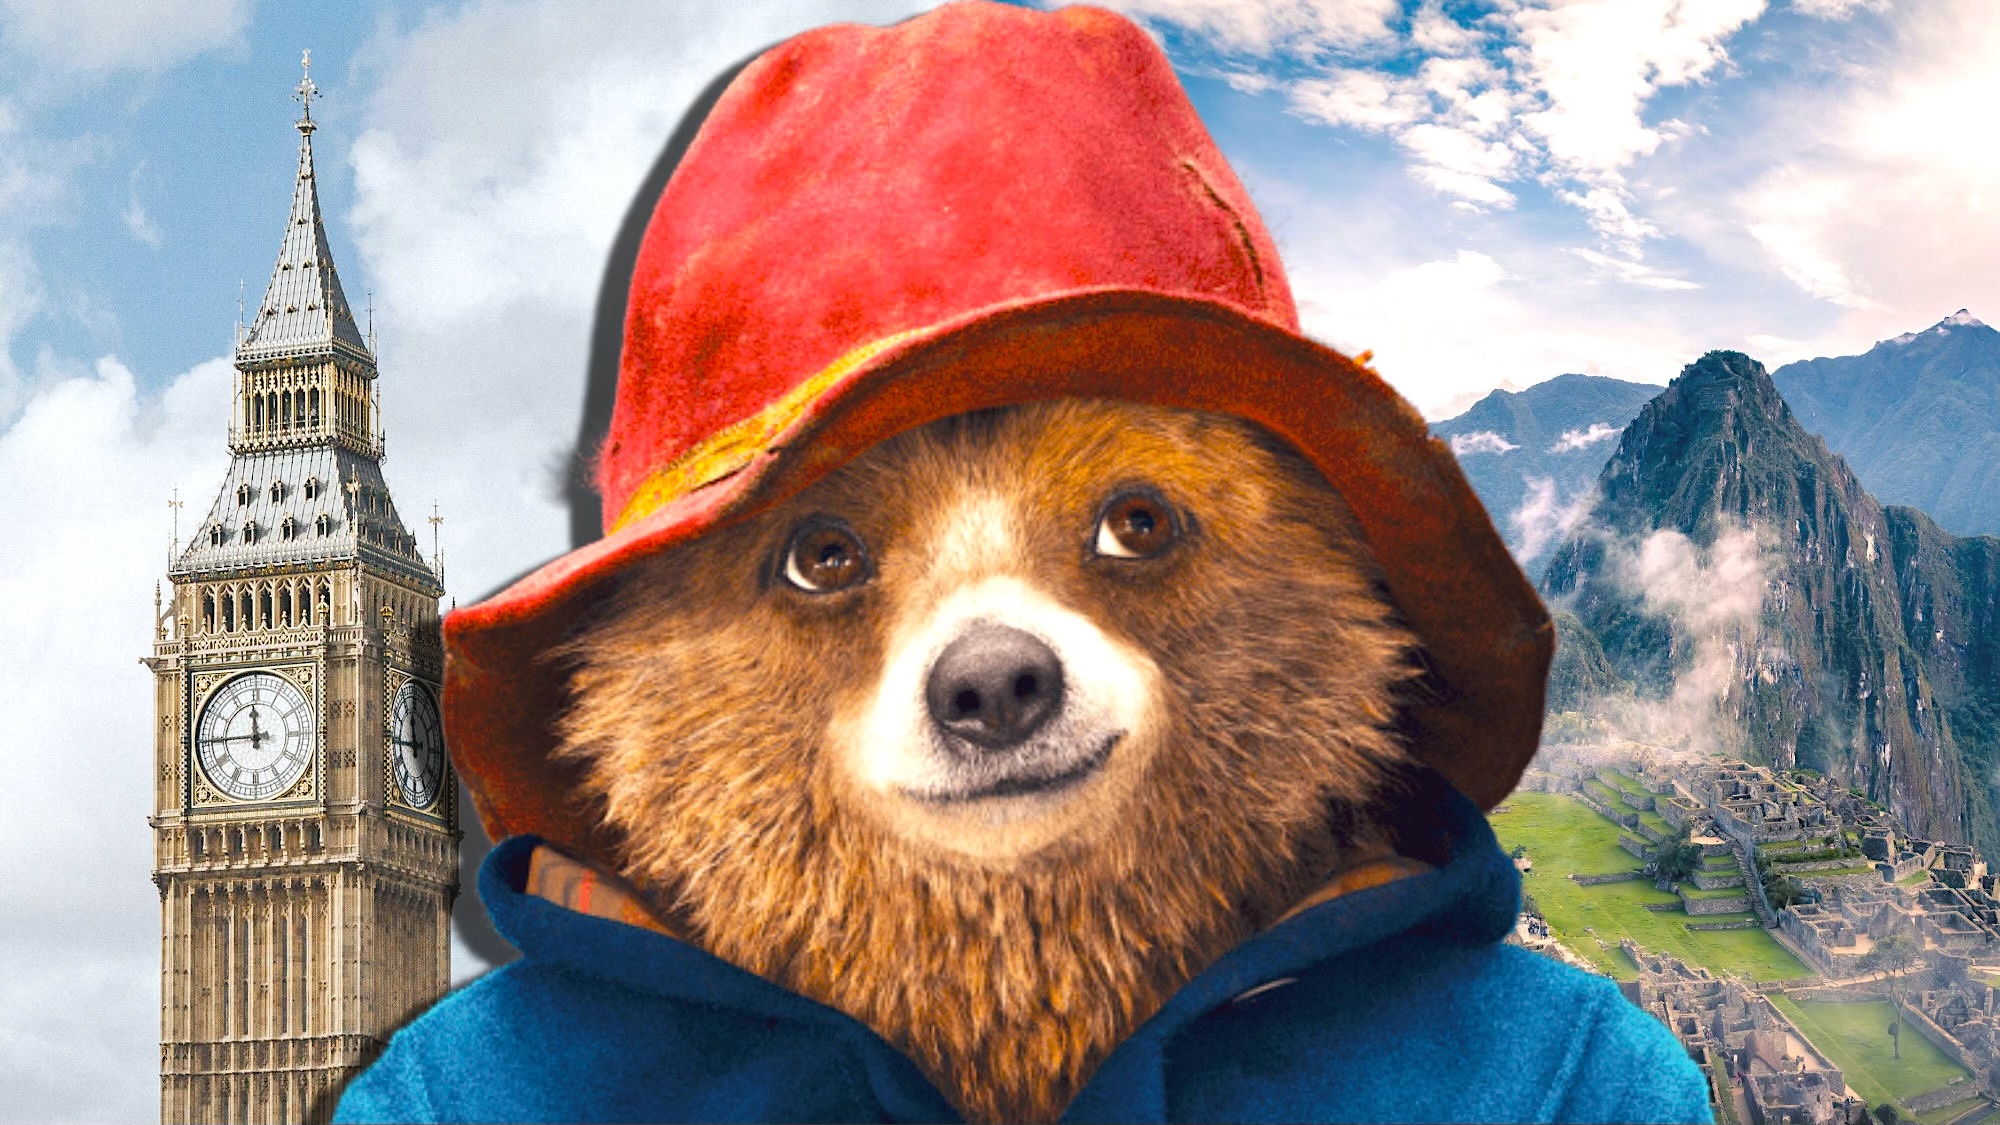 Paddington regresará en una tercera película: el querido oso londinense vuelve a Perú